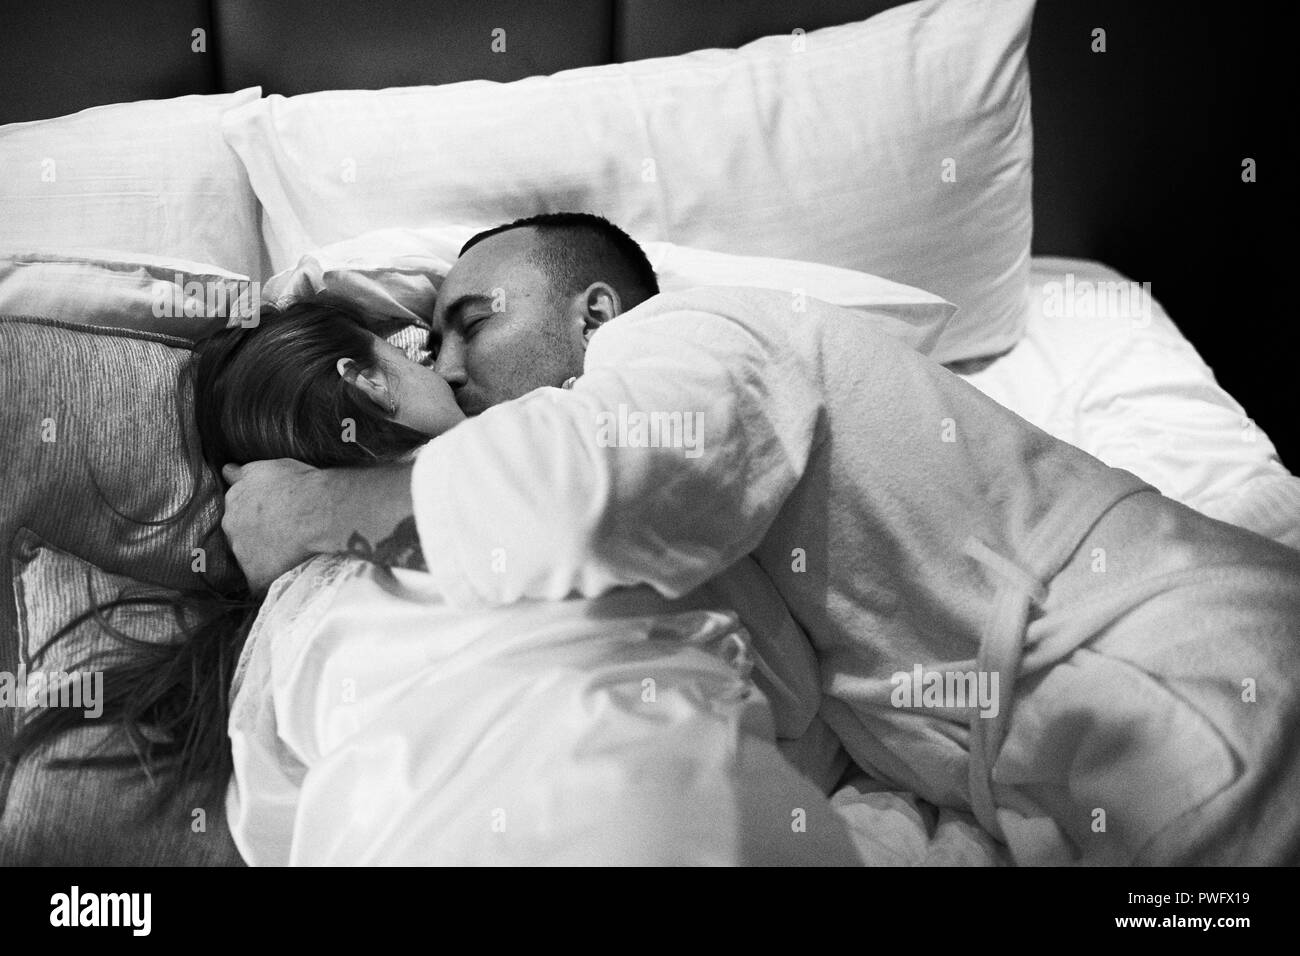 Jeune couple romantique et s'embrasser dans le lit. Jolie fille brune et l'homme. Photo en noir et blanc. Banque D'Images